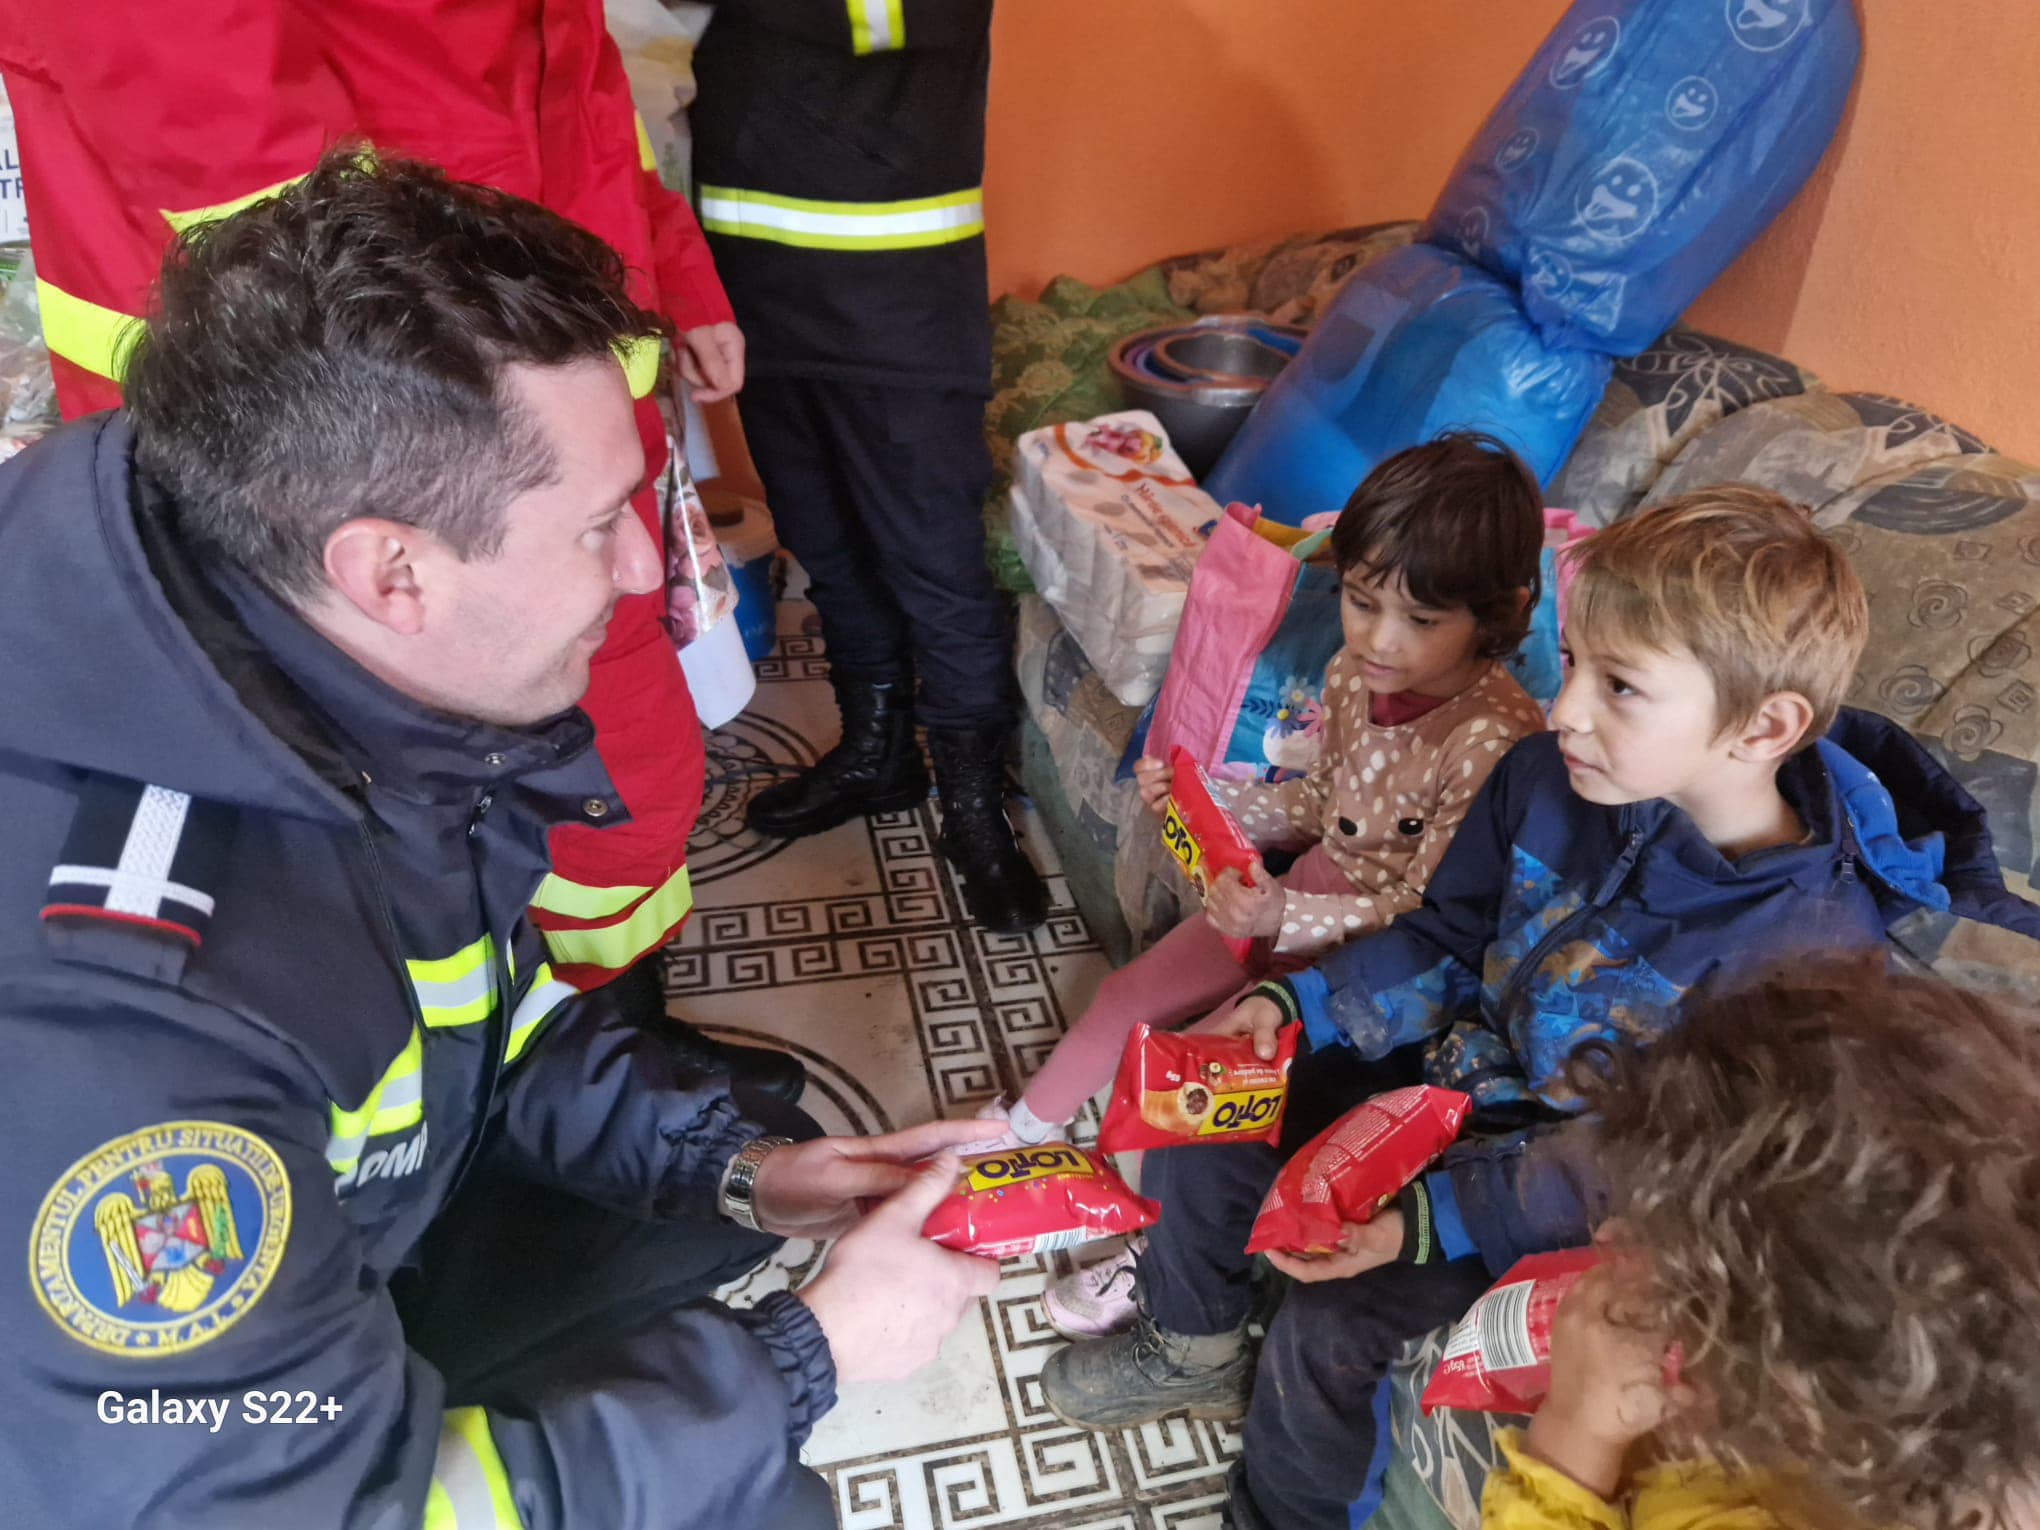 Pompierii sibieni au împărțit daruri pentru mai mulți copii greu încercați. Iosif, Maia, Anais și Darius aproape au rămas fără casă în urma unui incendiu